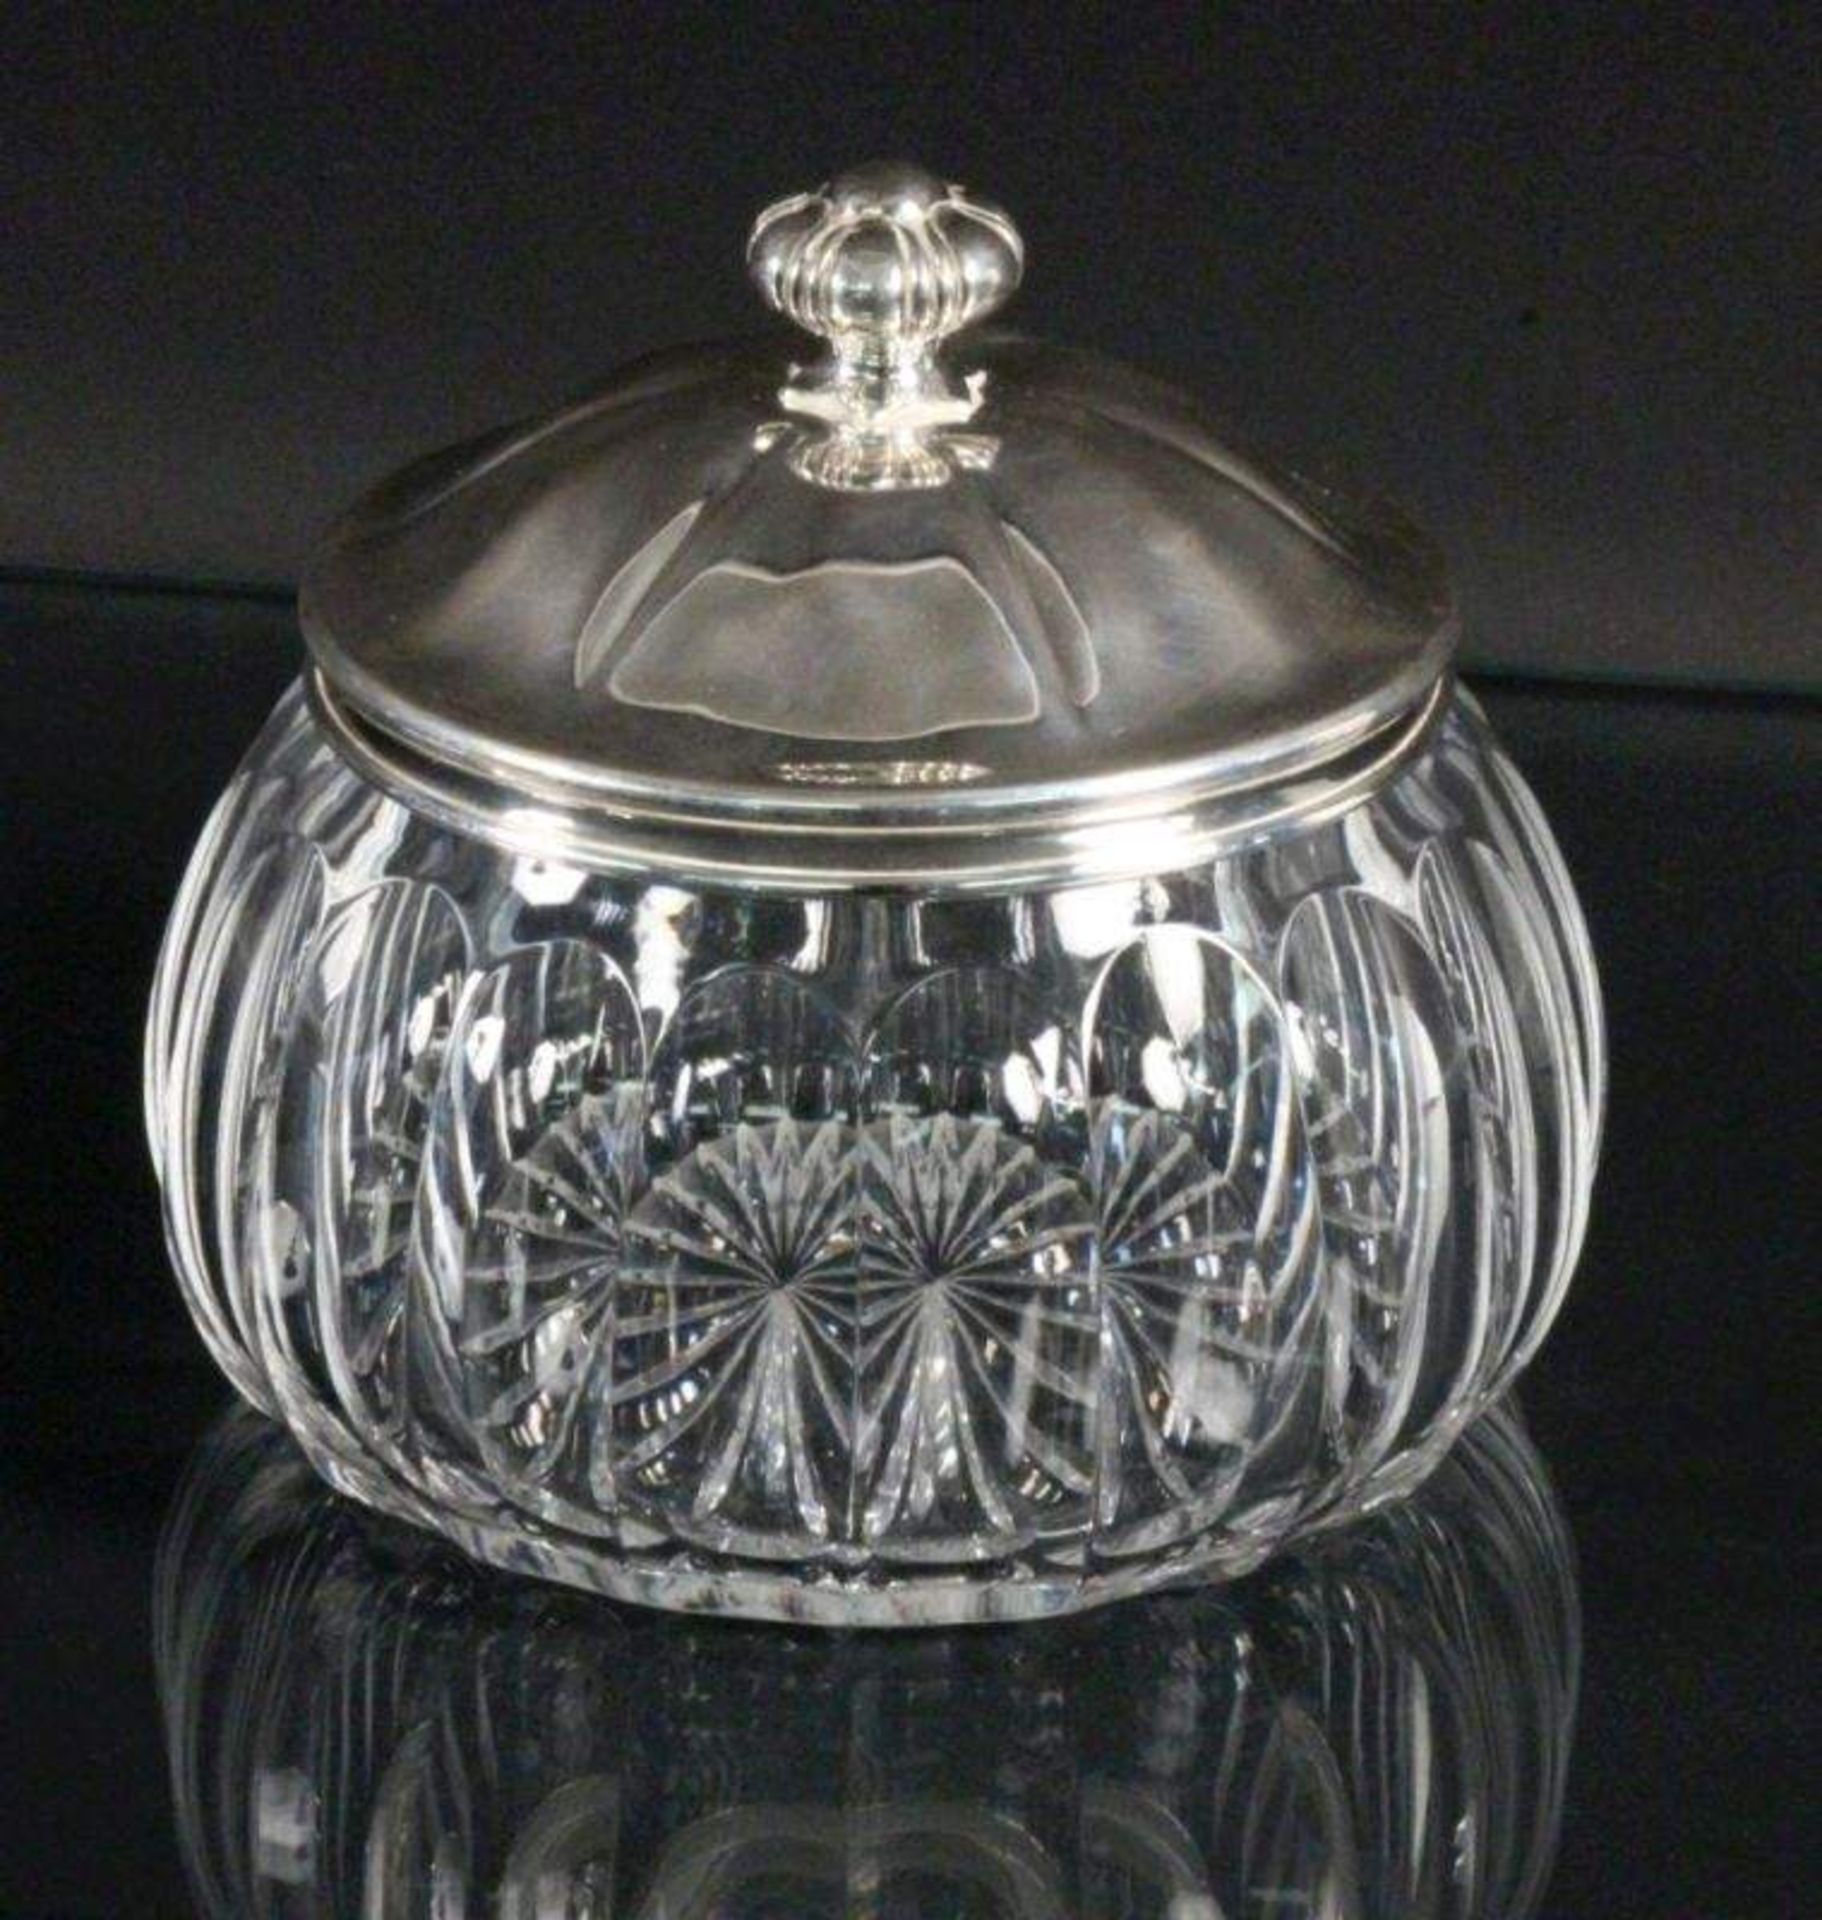 BONBONIEREDeckel Silber 800, Behälter aus geschliffenem Kristallglas. H.14cm, D.17cmAufrufpreis: 120